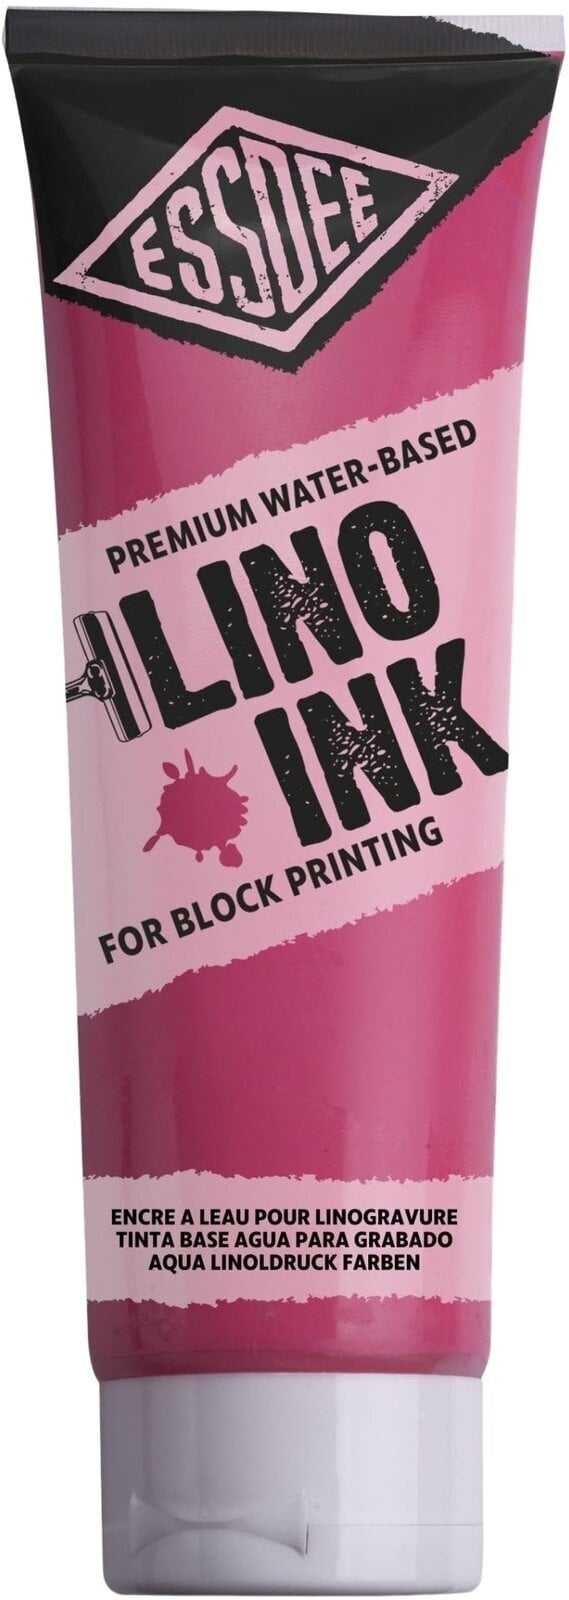 Peintures pour la linogravure Essdee Block Printing Ink Peintures pour la linogravure Fluorescent Red 300 ml